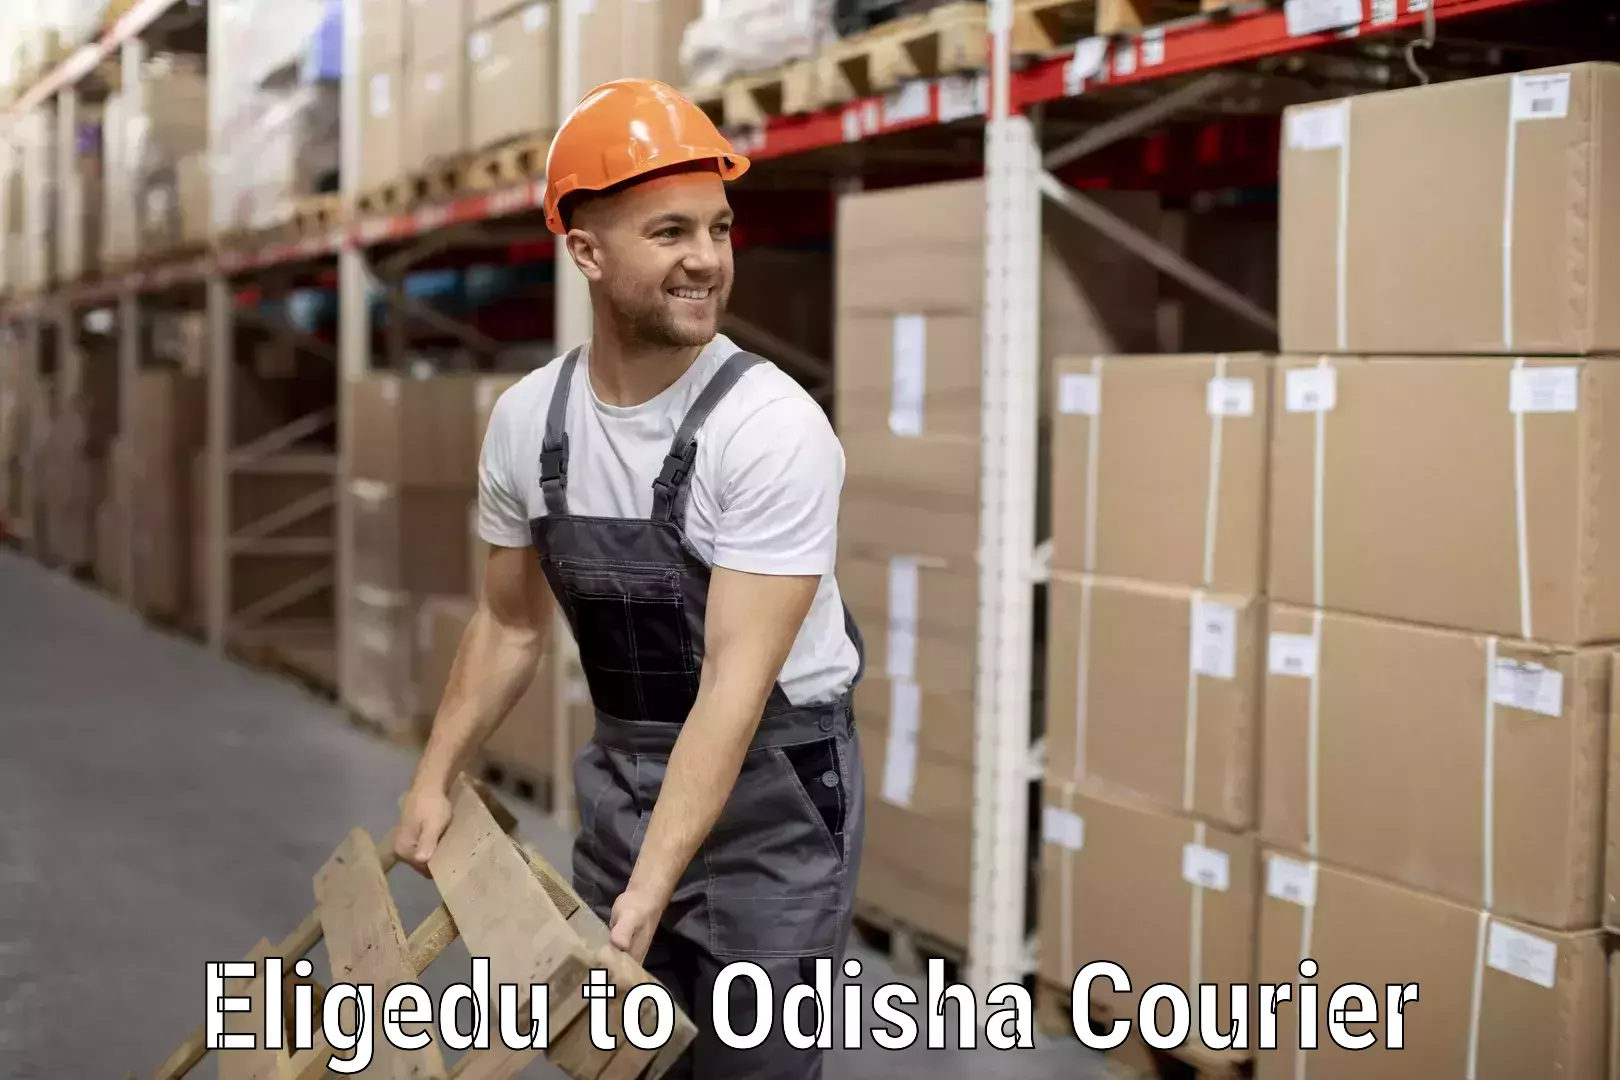 Luggage transport company Eligedu to Odisha